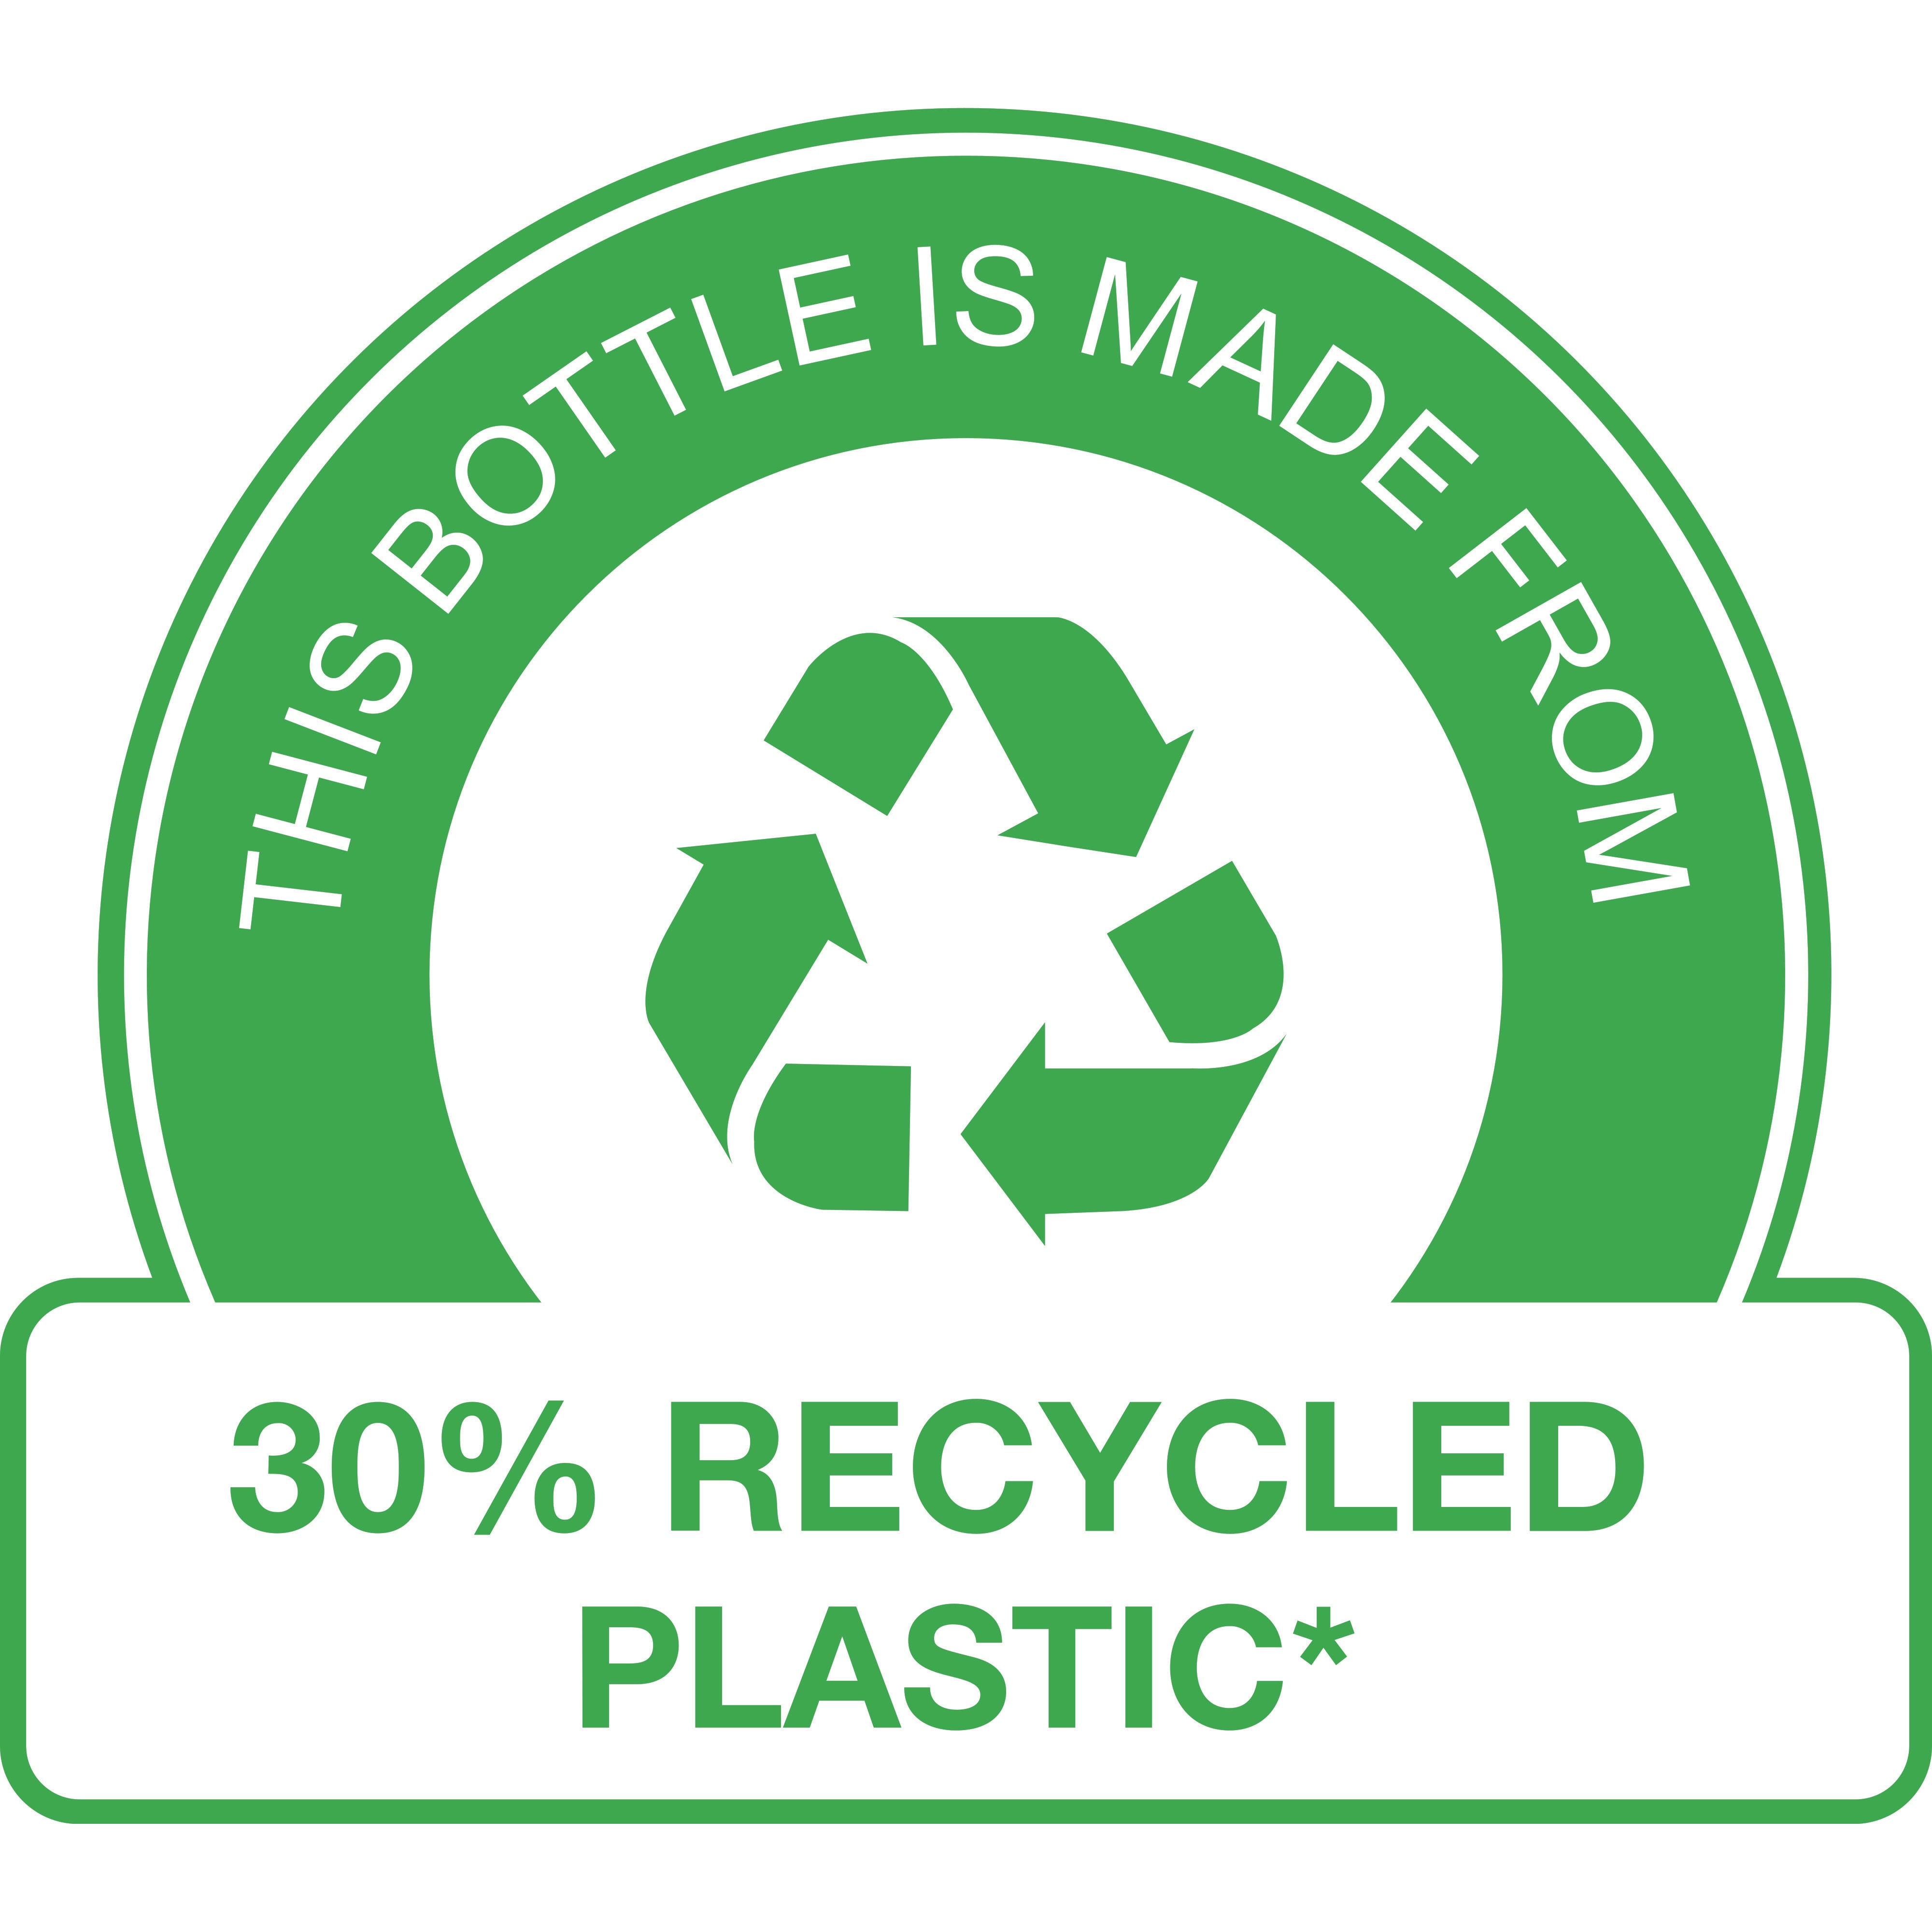 Šis butelis pagamintas iš 30 % perdirbto plastiko* 

(* išskyrus pompą)